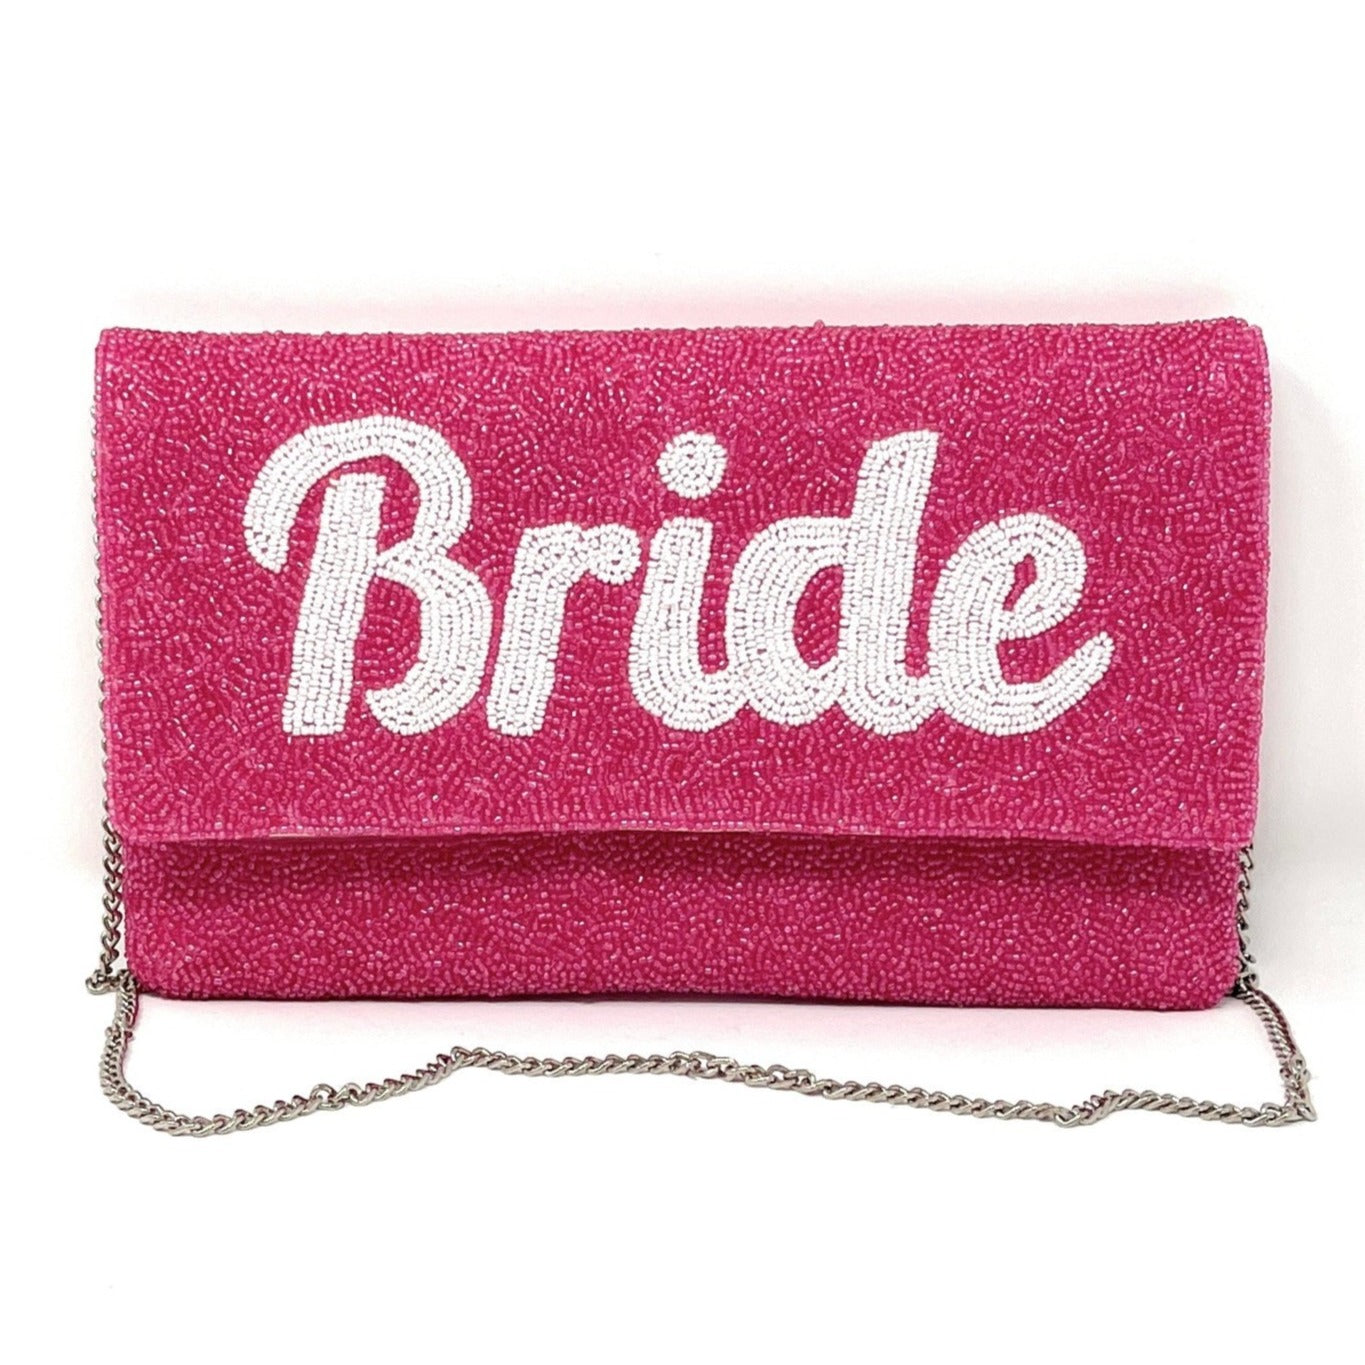 Wedding Handbags & Bridal Clutch Bags